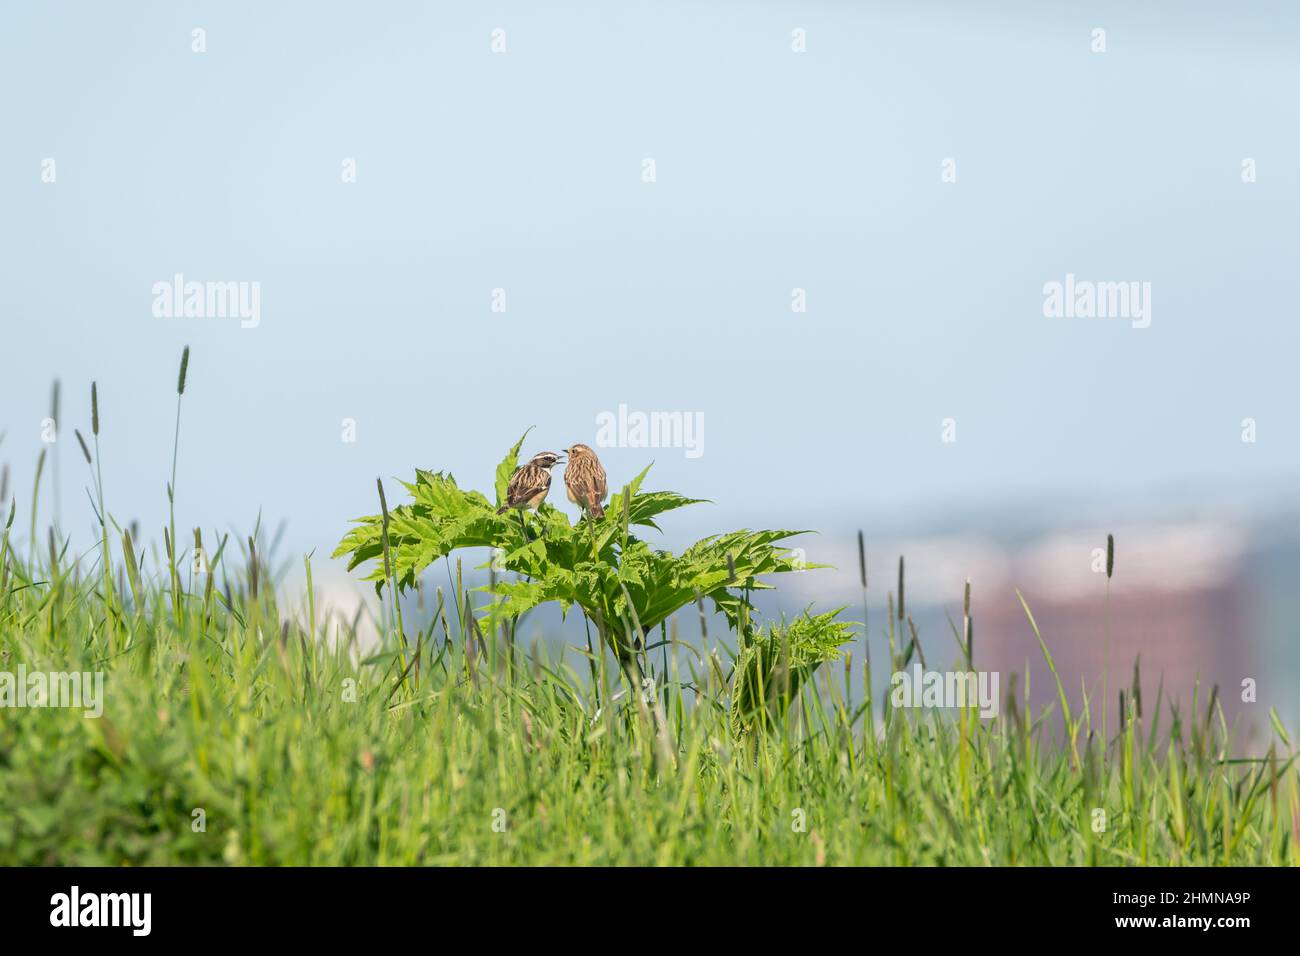 Fotografia di uccelli, whinchat uccelli, seduto su una pianta verde. Sfondo blu cielo. Foto Stock